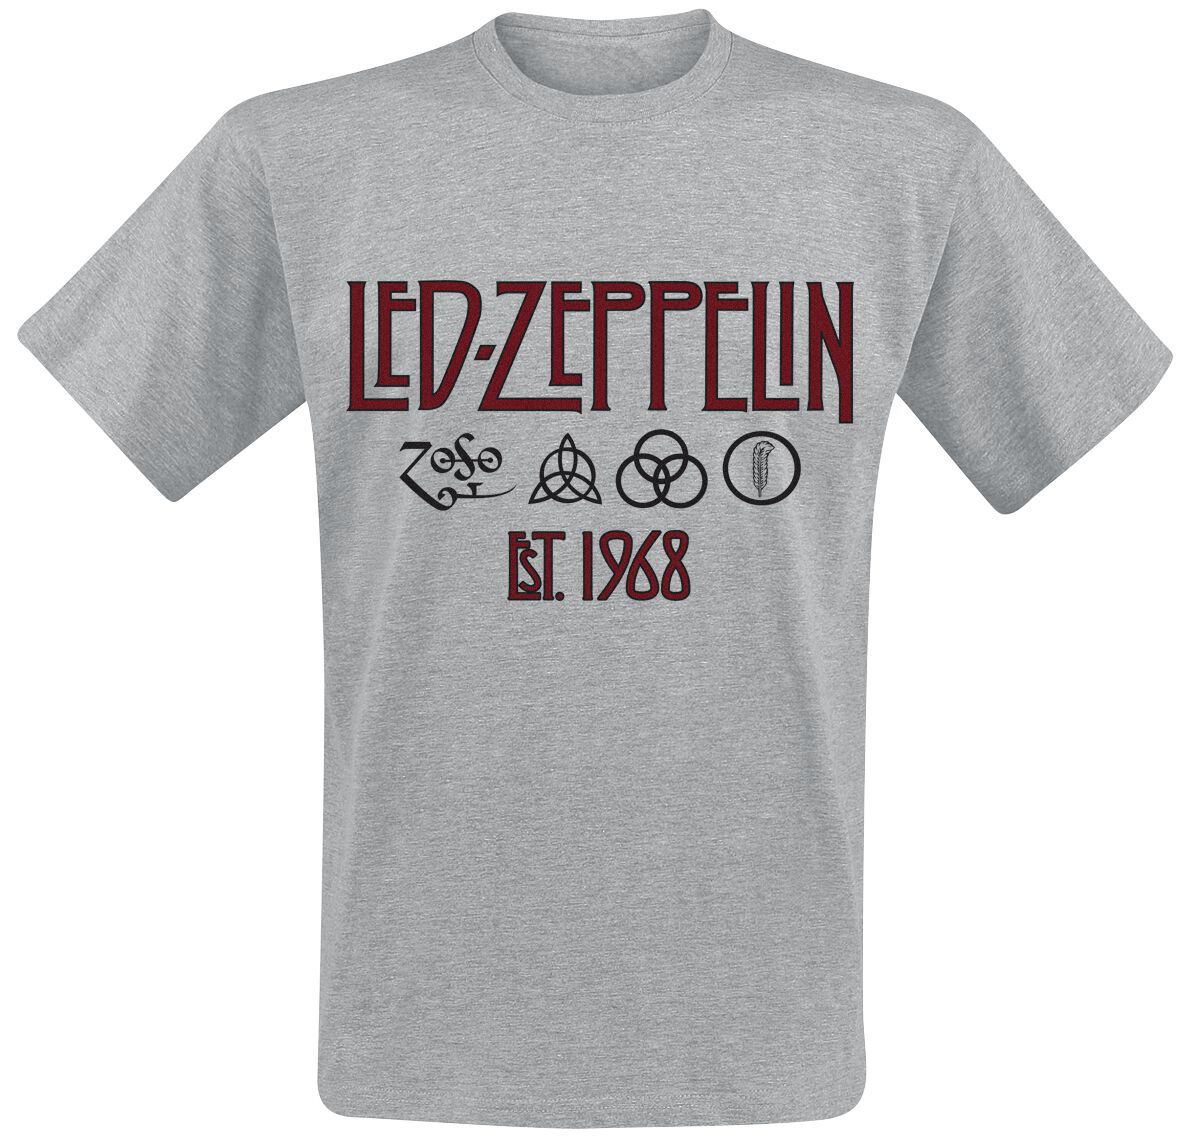 Led Zeppelin T-Shirt - Symbols Est. 1968 - M bis 3XL - für Männer - Größe M - grau meliert  - Lizenziertes Merchandise!